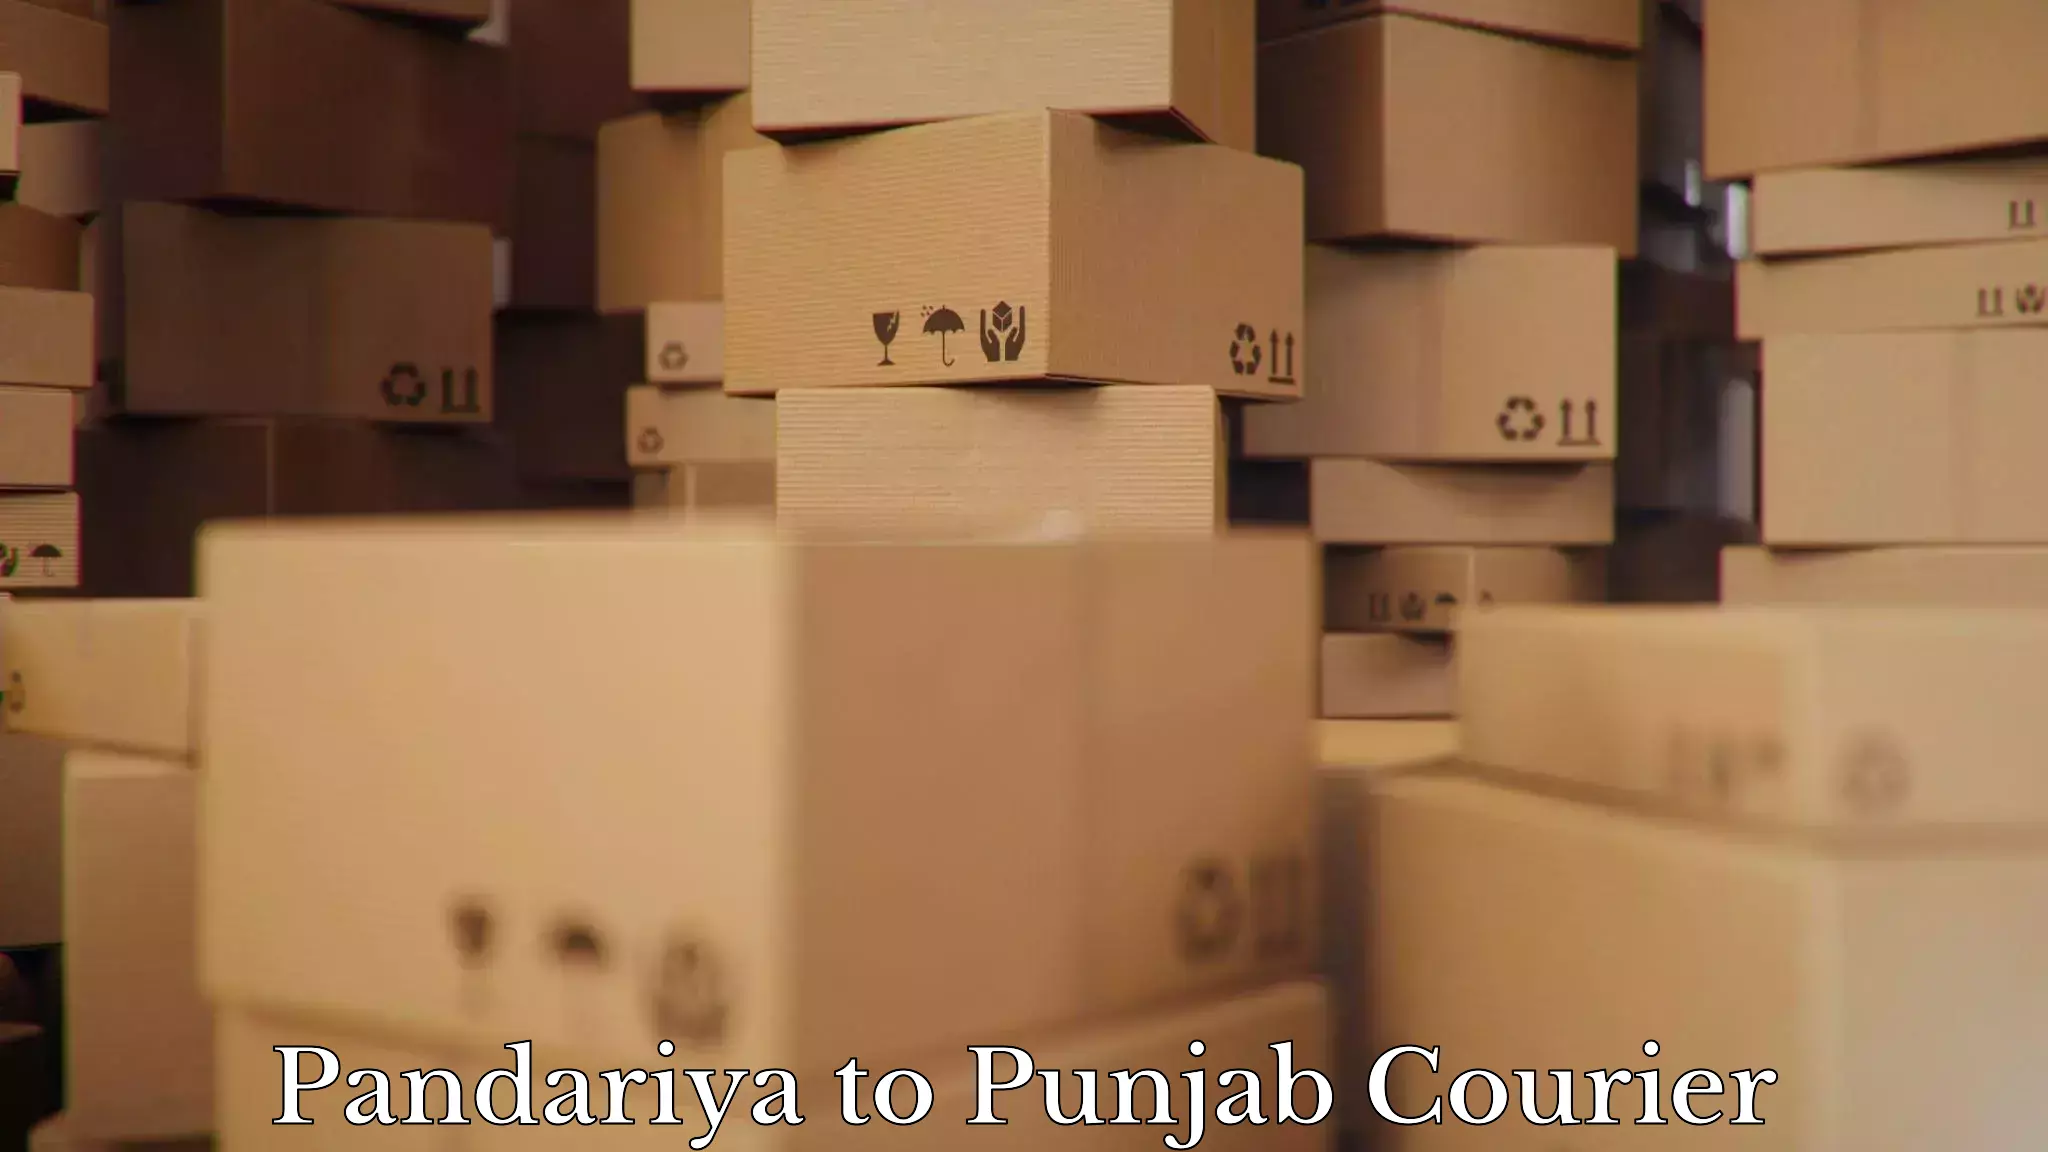 Effective moving solutions Pandariya to Punjab